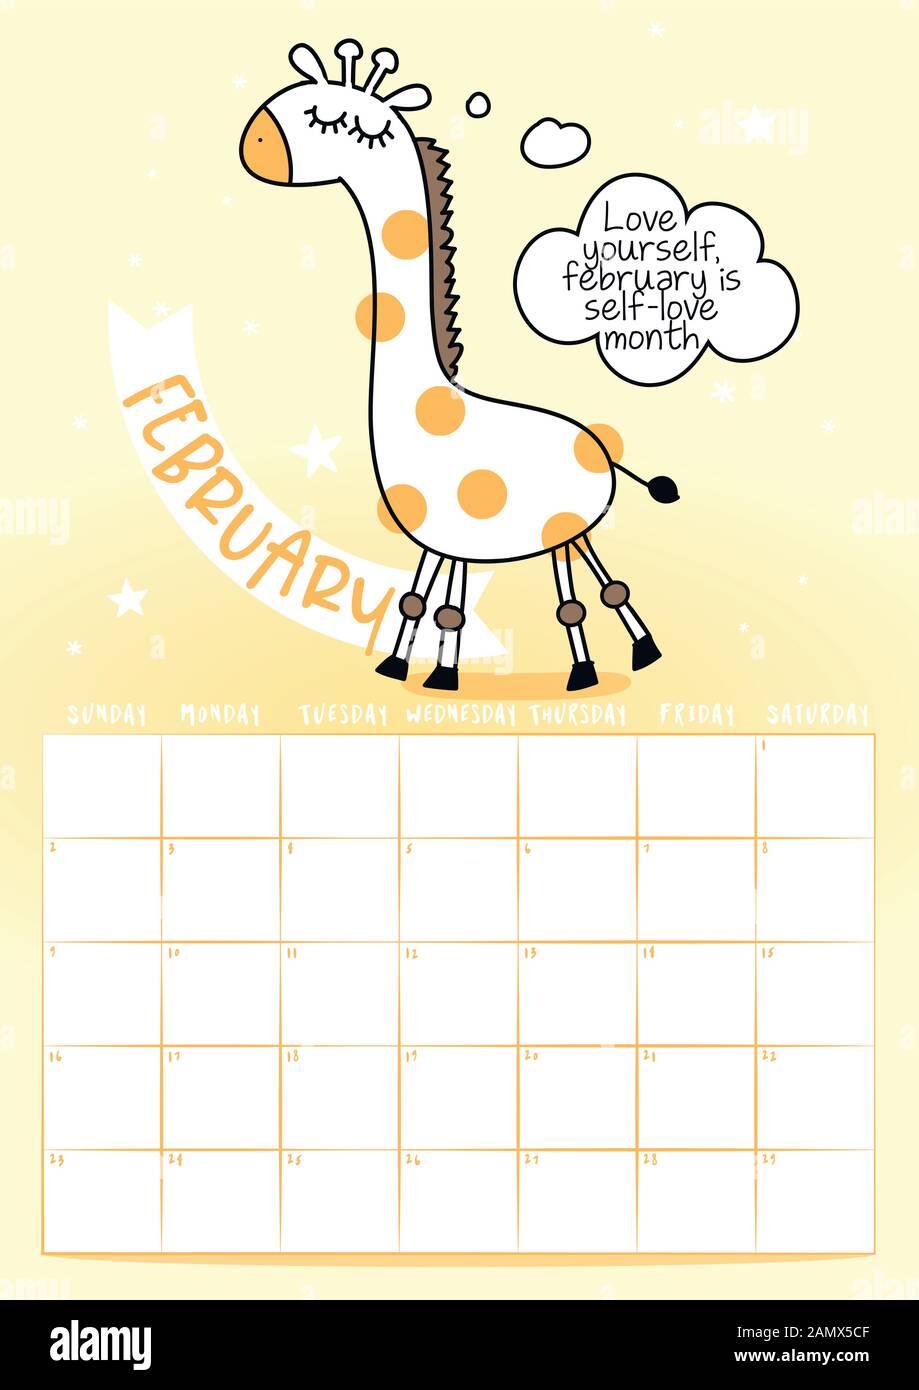 Februar 2020 Kalender mit Kalligraphie Phrase und Giraffe doodle: Ihre  eigene Sonne. Kalender, Planer Design, Woche am Sonntag beginnt, sta  Stock-Vektorgrafik - Alamy